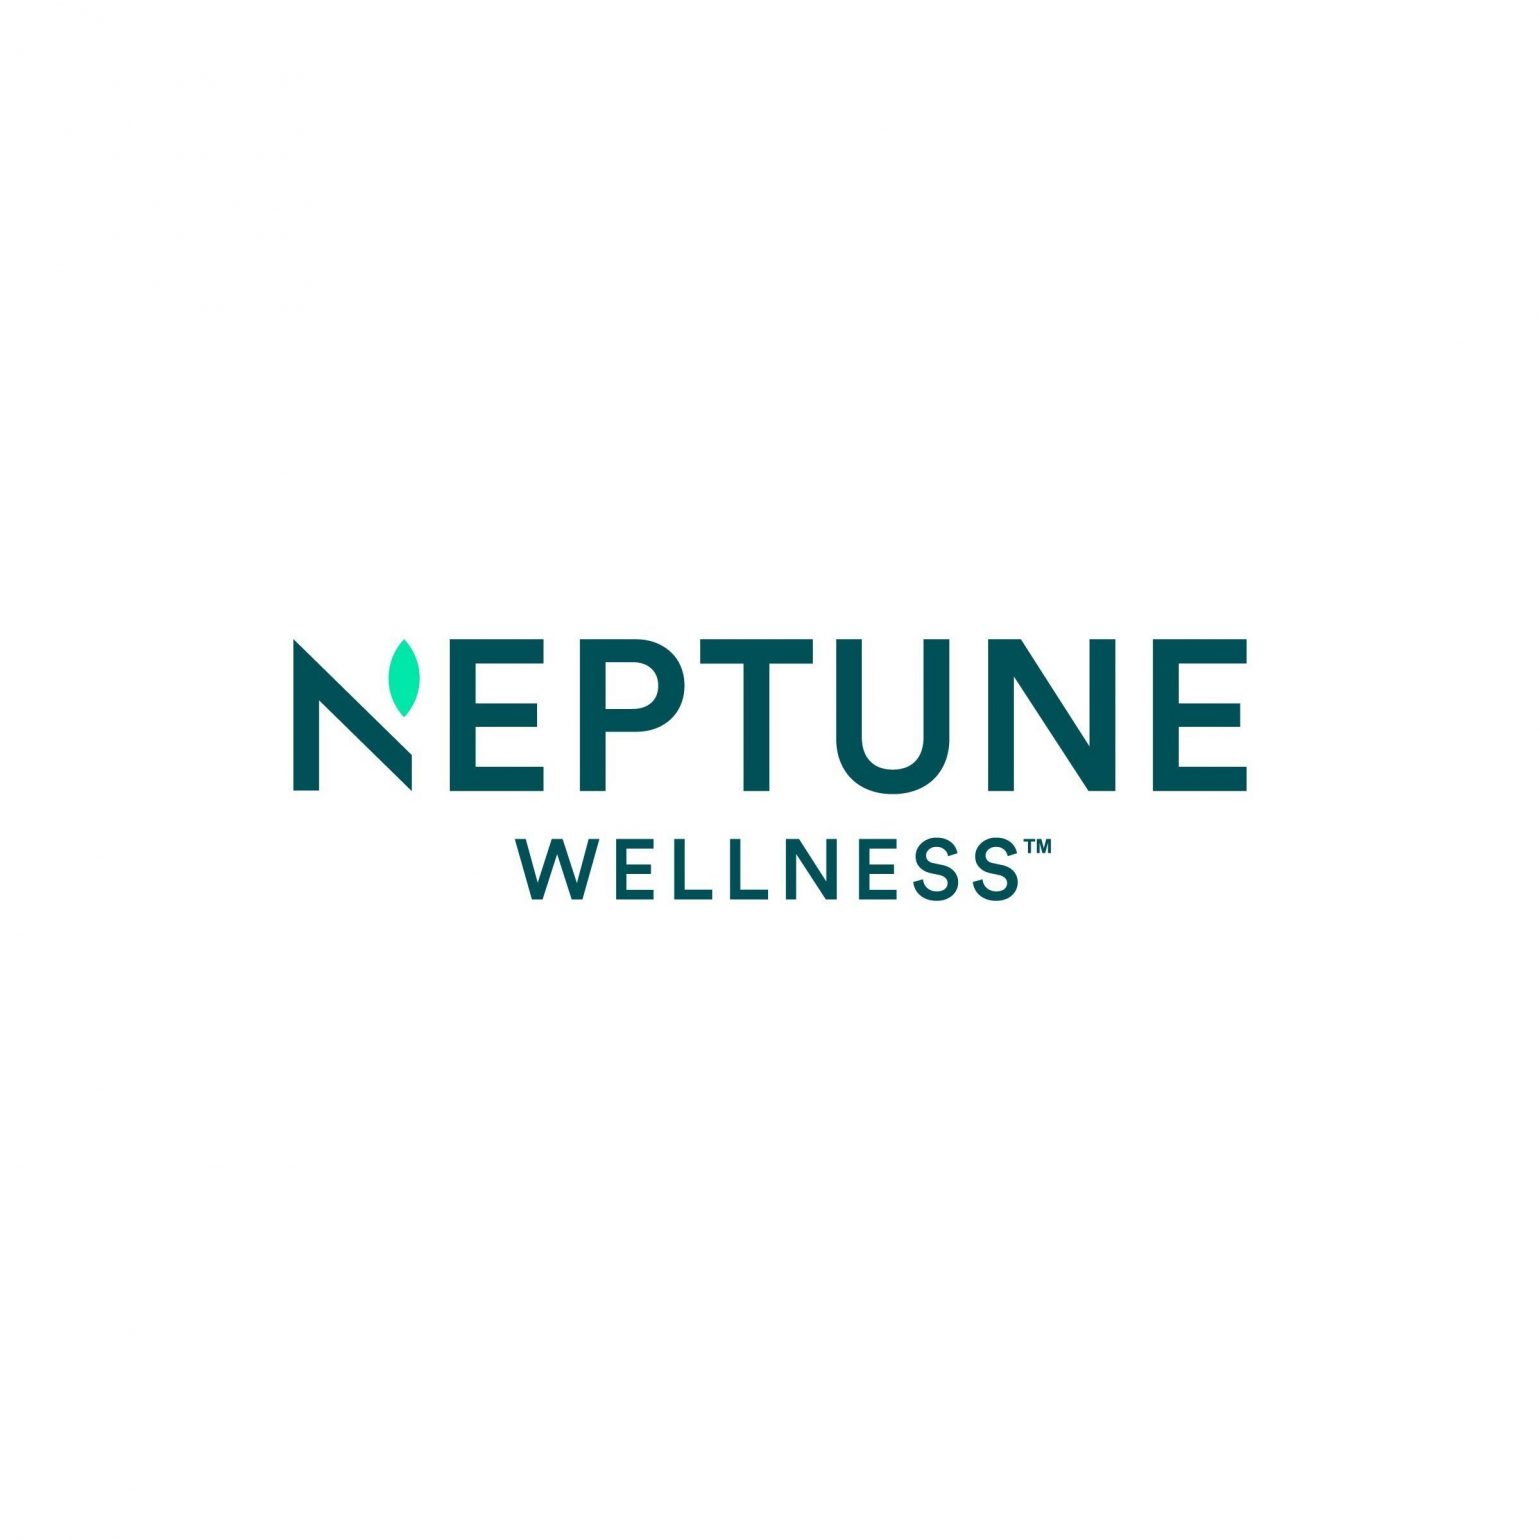 Neptune Wellness Solutions Inc., Cannabis Assets